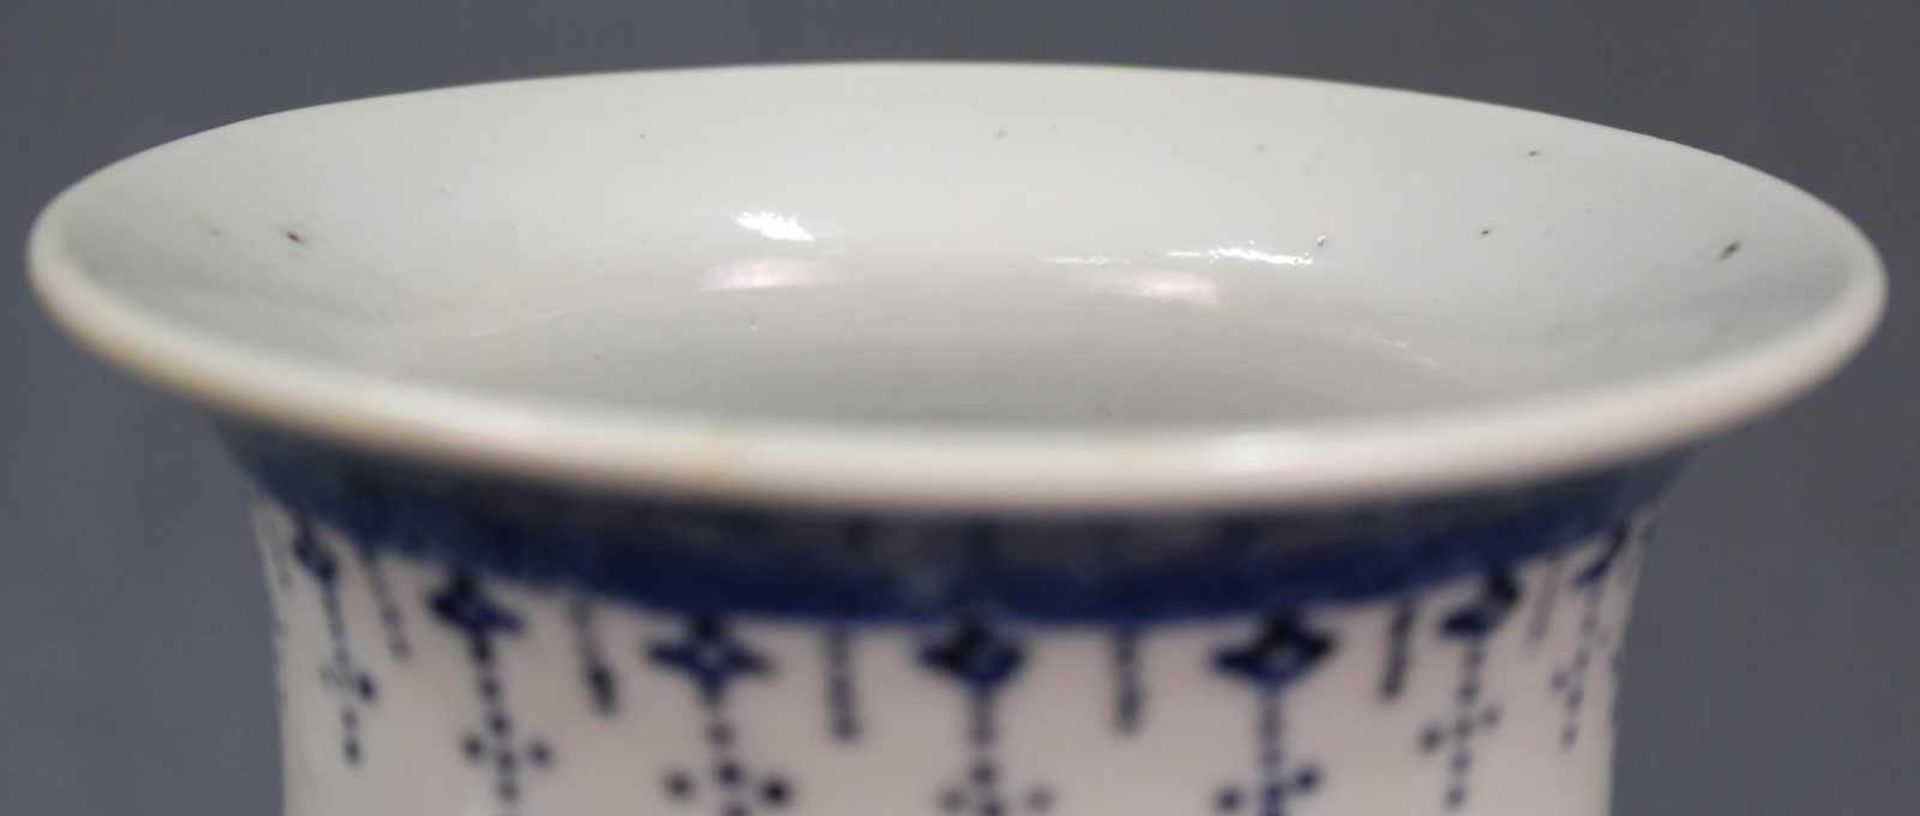 Vase Blau - Weiß Porzellan. China, alt. 4 - Zeichen Marke.21 cm hoch. Unterseitig blaue Marke.Vase - Image 6 of 9